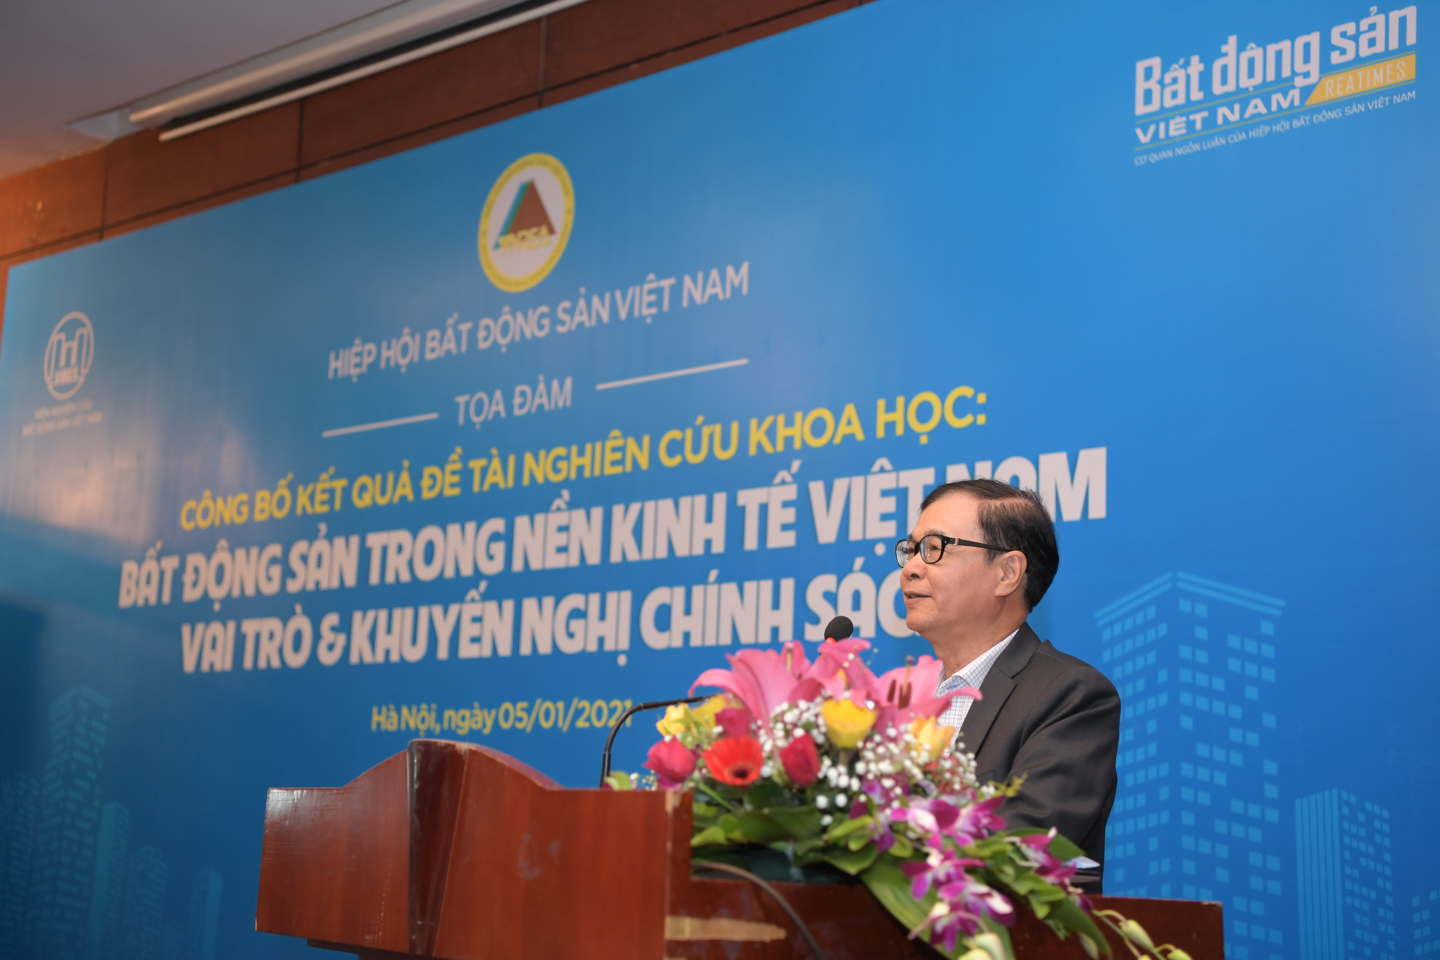 Ông Nguyễn Mạnh Hà, Phó Chủ tịch Hiệp hội Bất động sản Việt Nam phát biểu kết luận